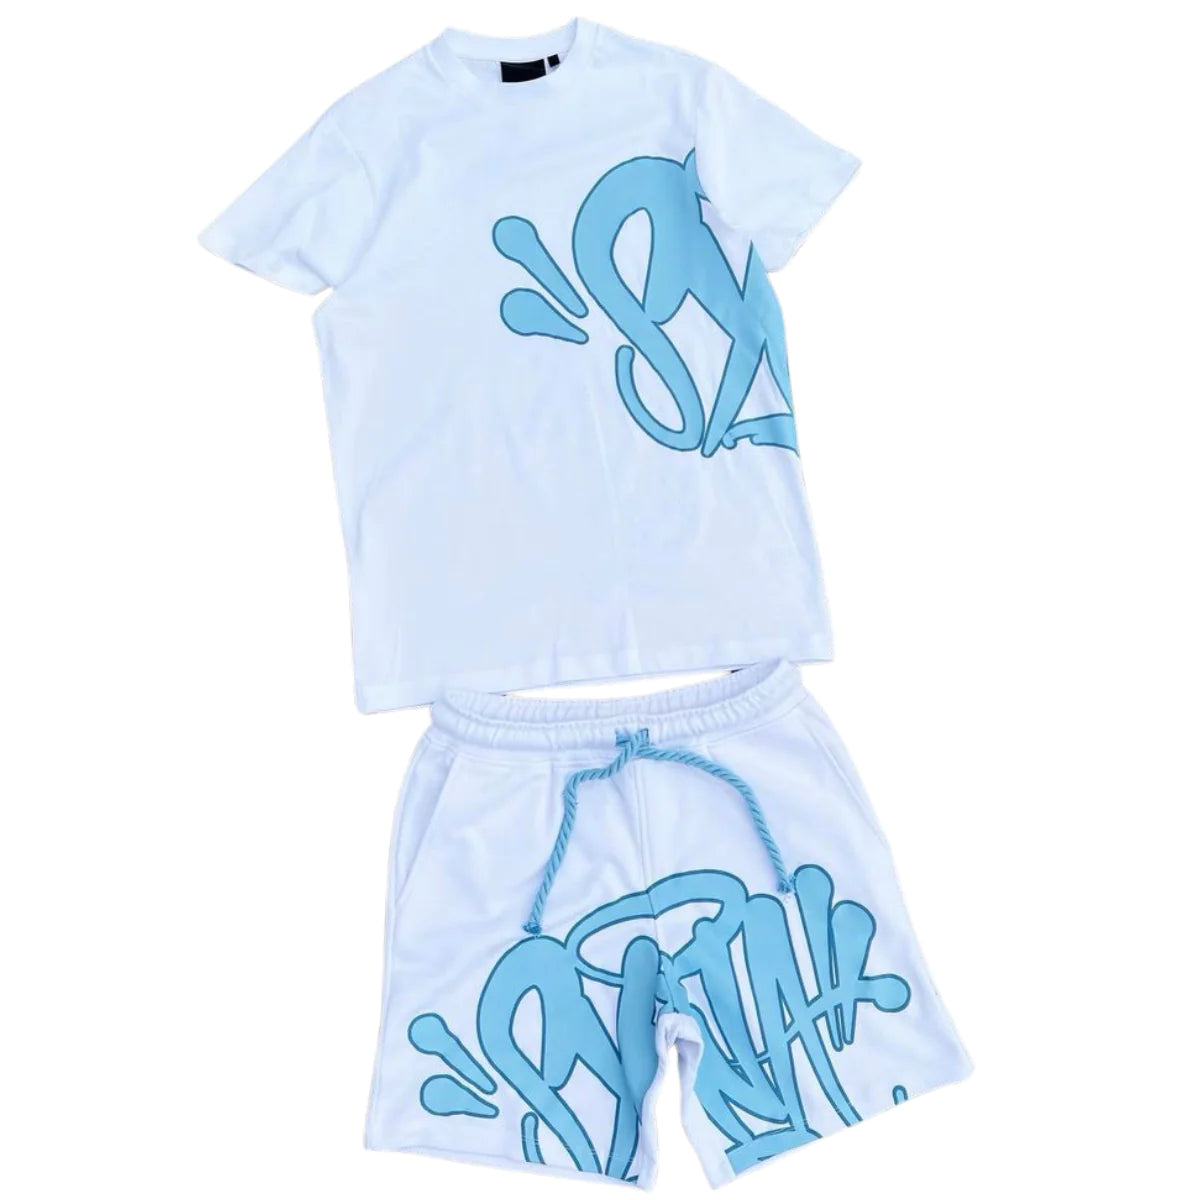 Syna World Logo Tee & Short Set 'White Blue' (Australia Exclusive)